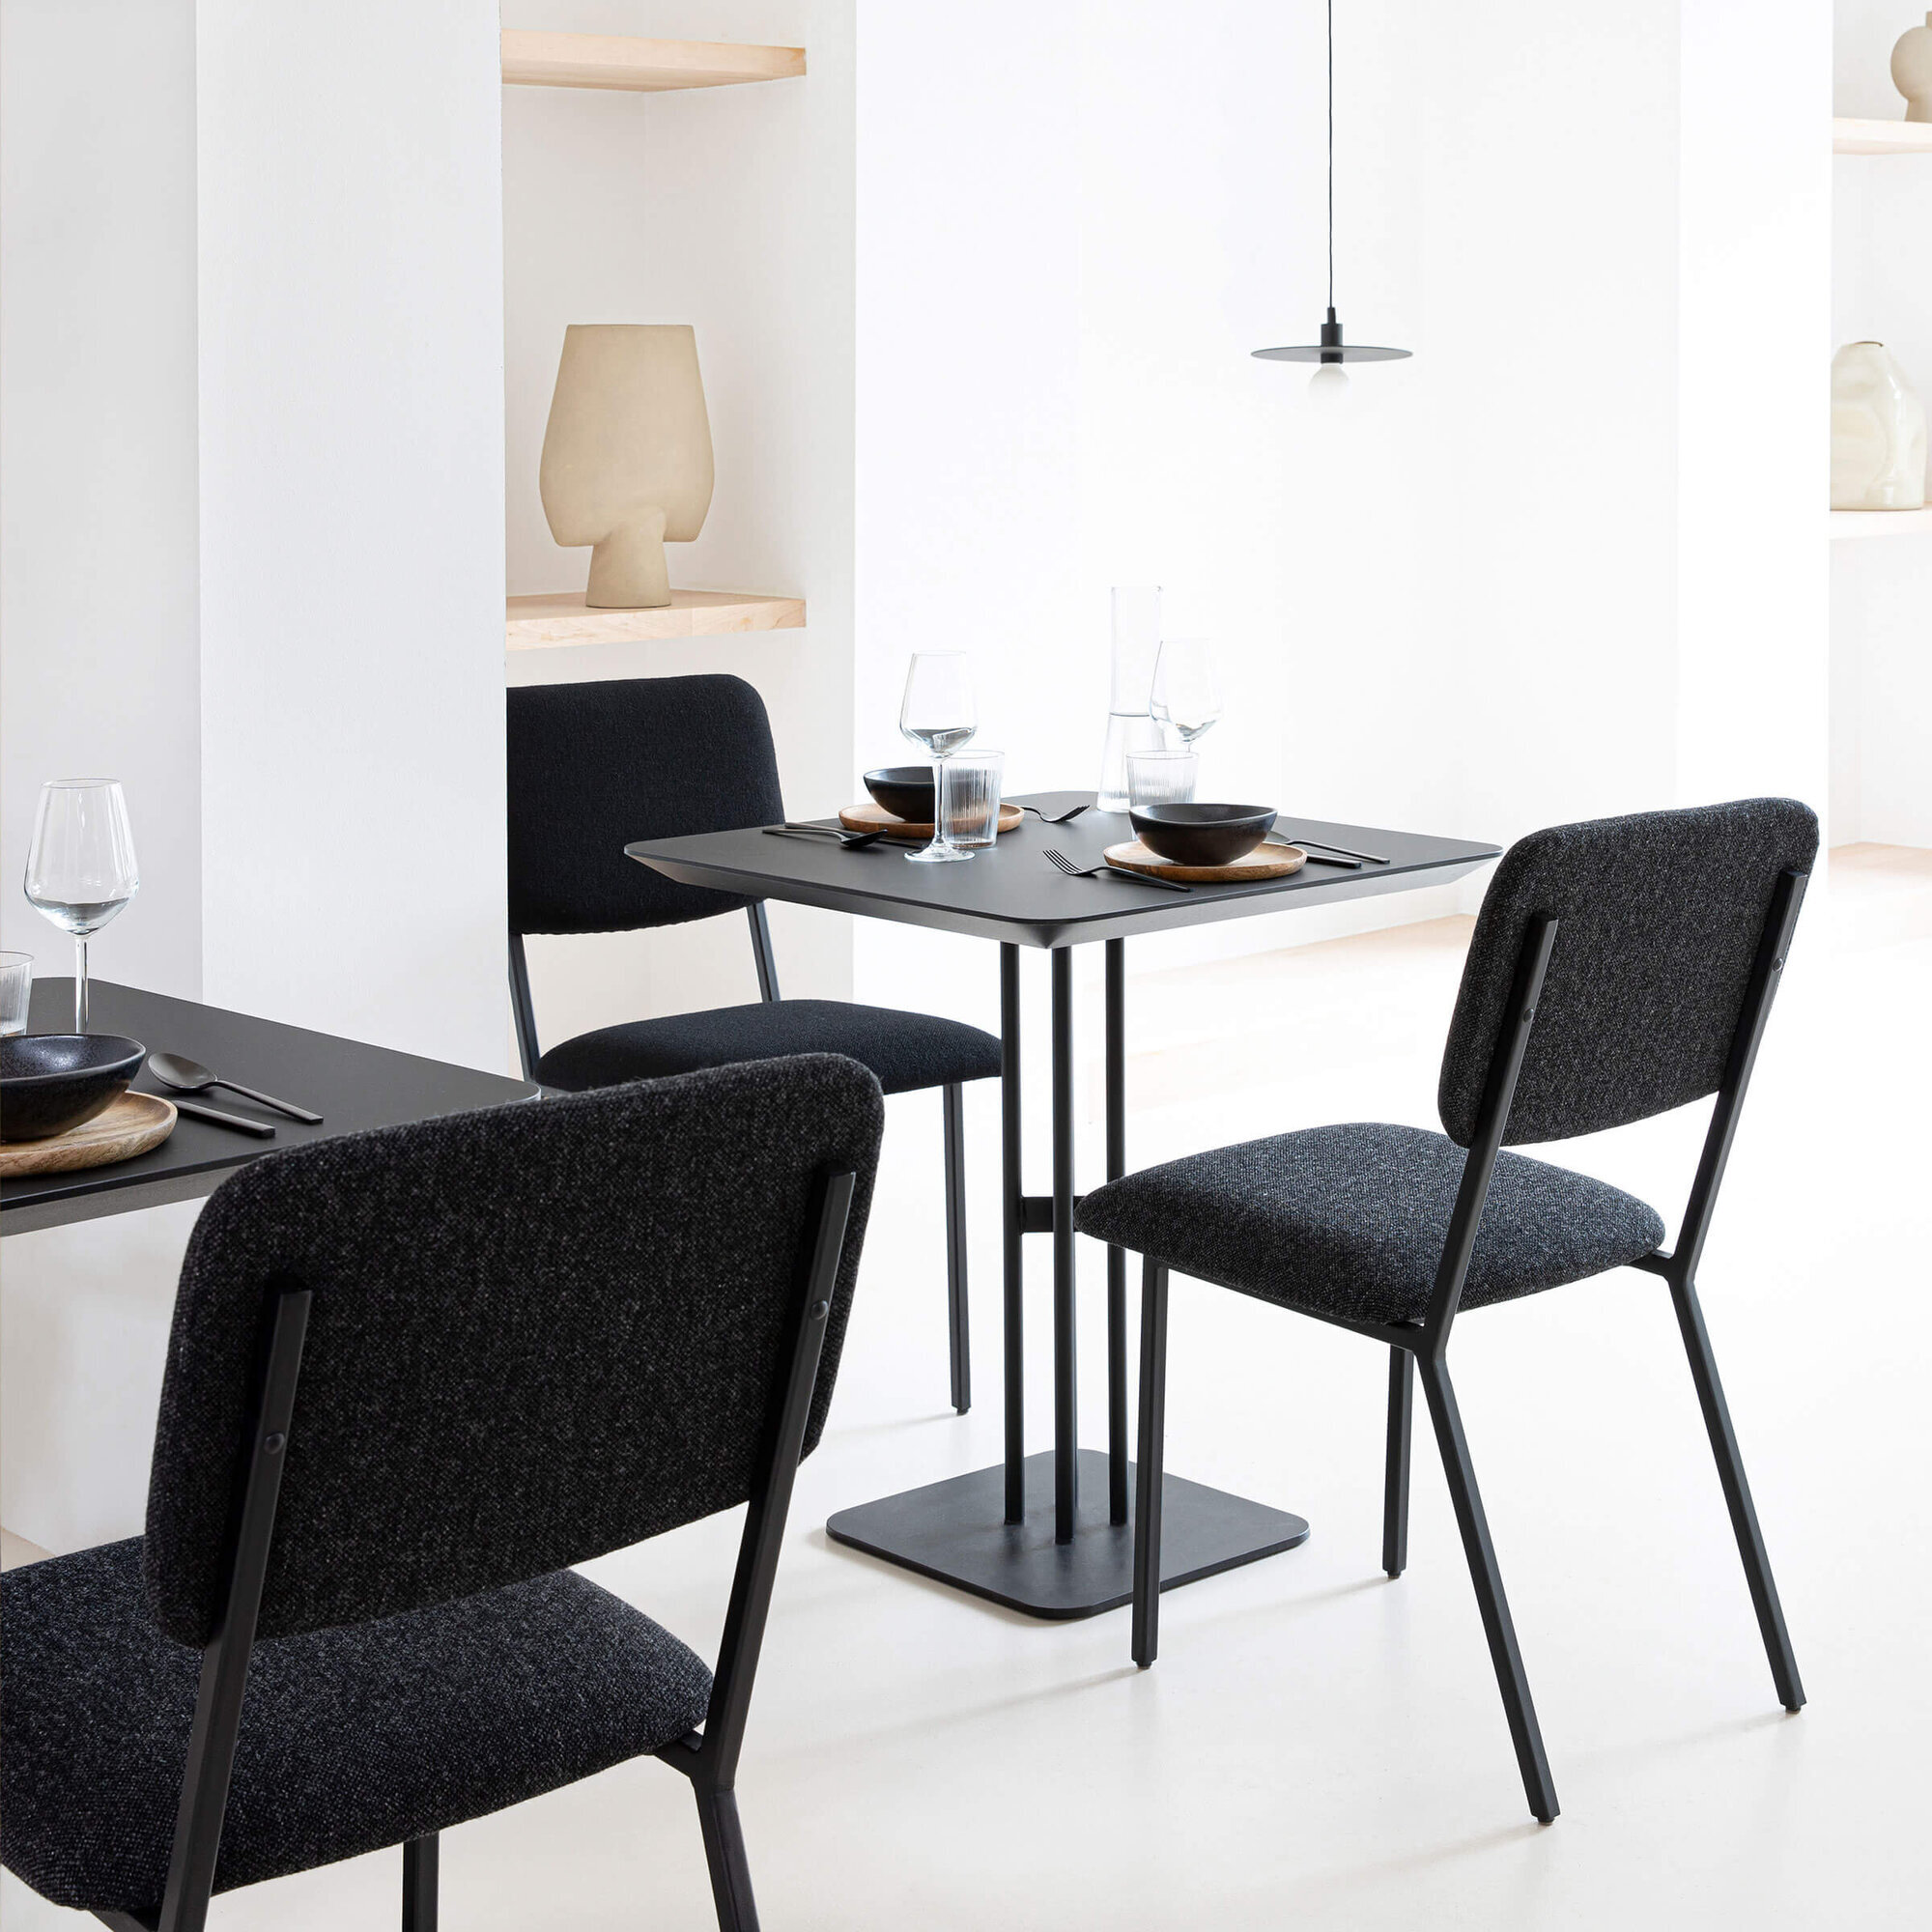 Rectangular Design Bistro Table | Rest x 2 white | Oak hardwax oil natural light 3041 | Studio HENK|